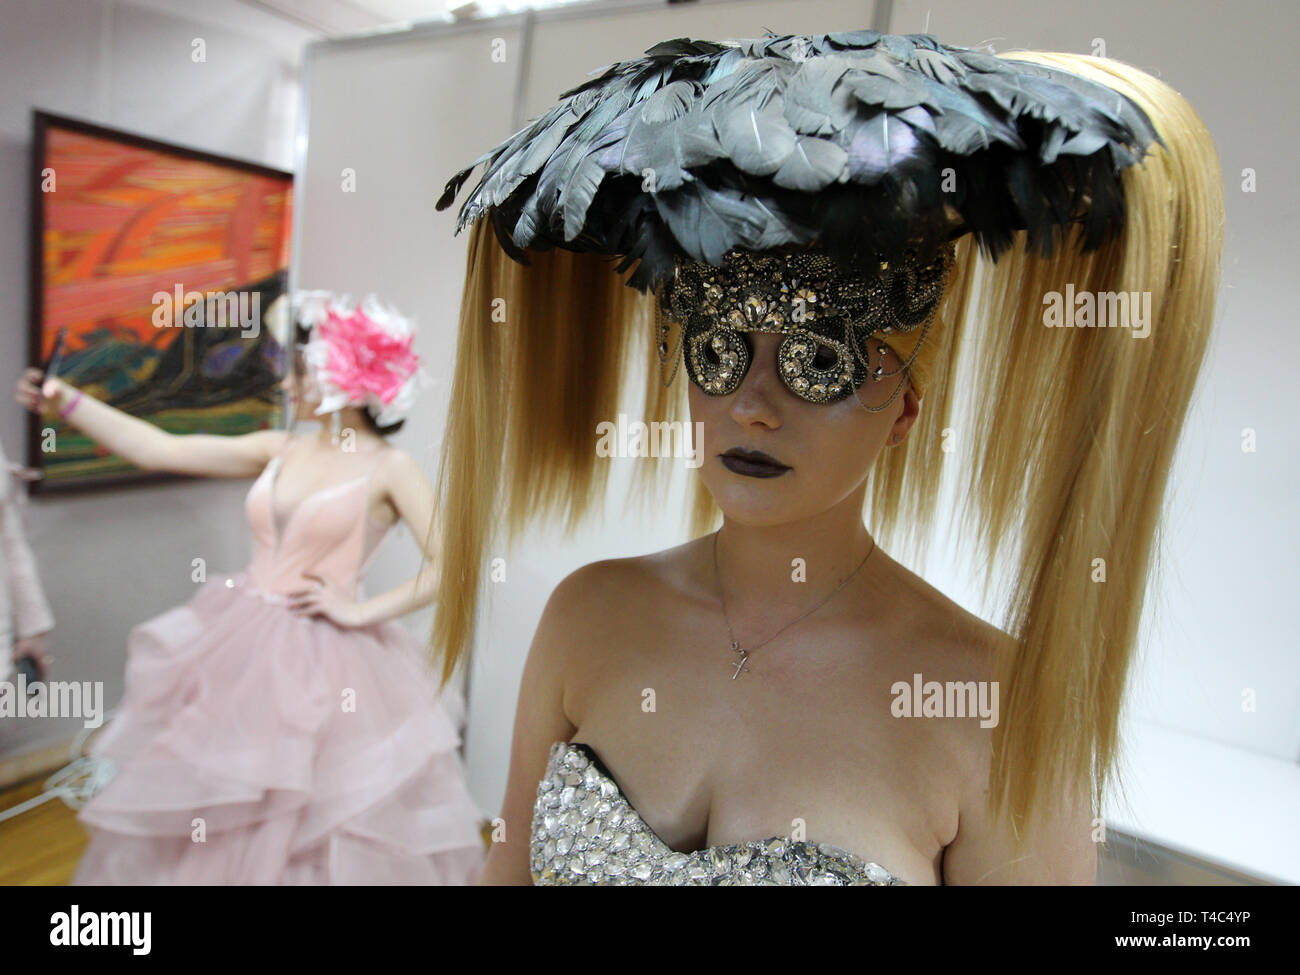 Ein Modell gesehen, die während der jährlichen Internationalen friseure Festival, Crystal Angel in Kiew. Die Friseur-und Make-up-Künstler in der Internationalen Festival friseur Kunst, Mode und Design Crystal Angel in Kiew teilgenommen. Stockfoto